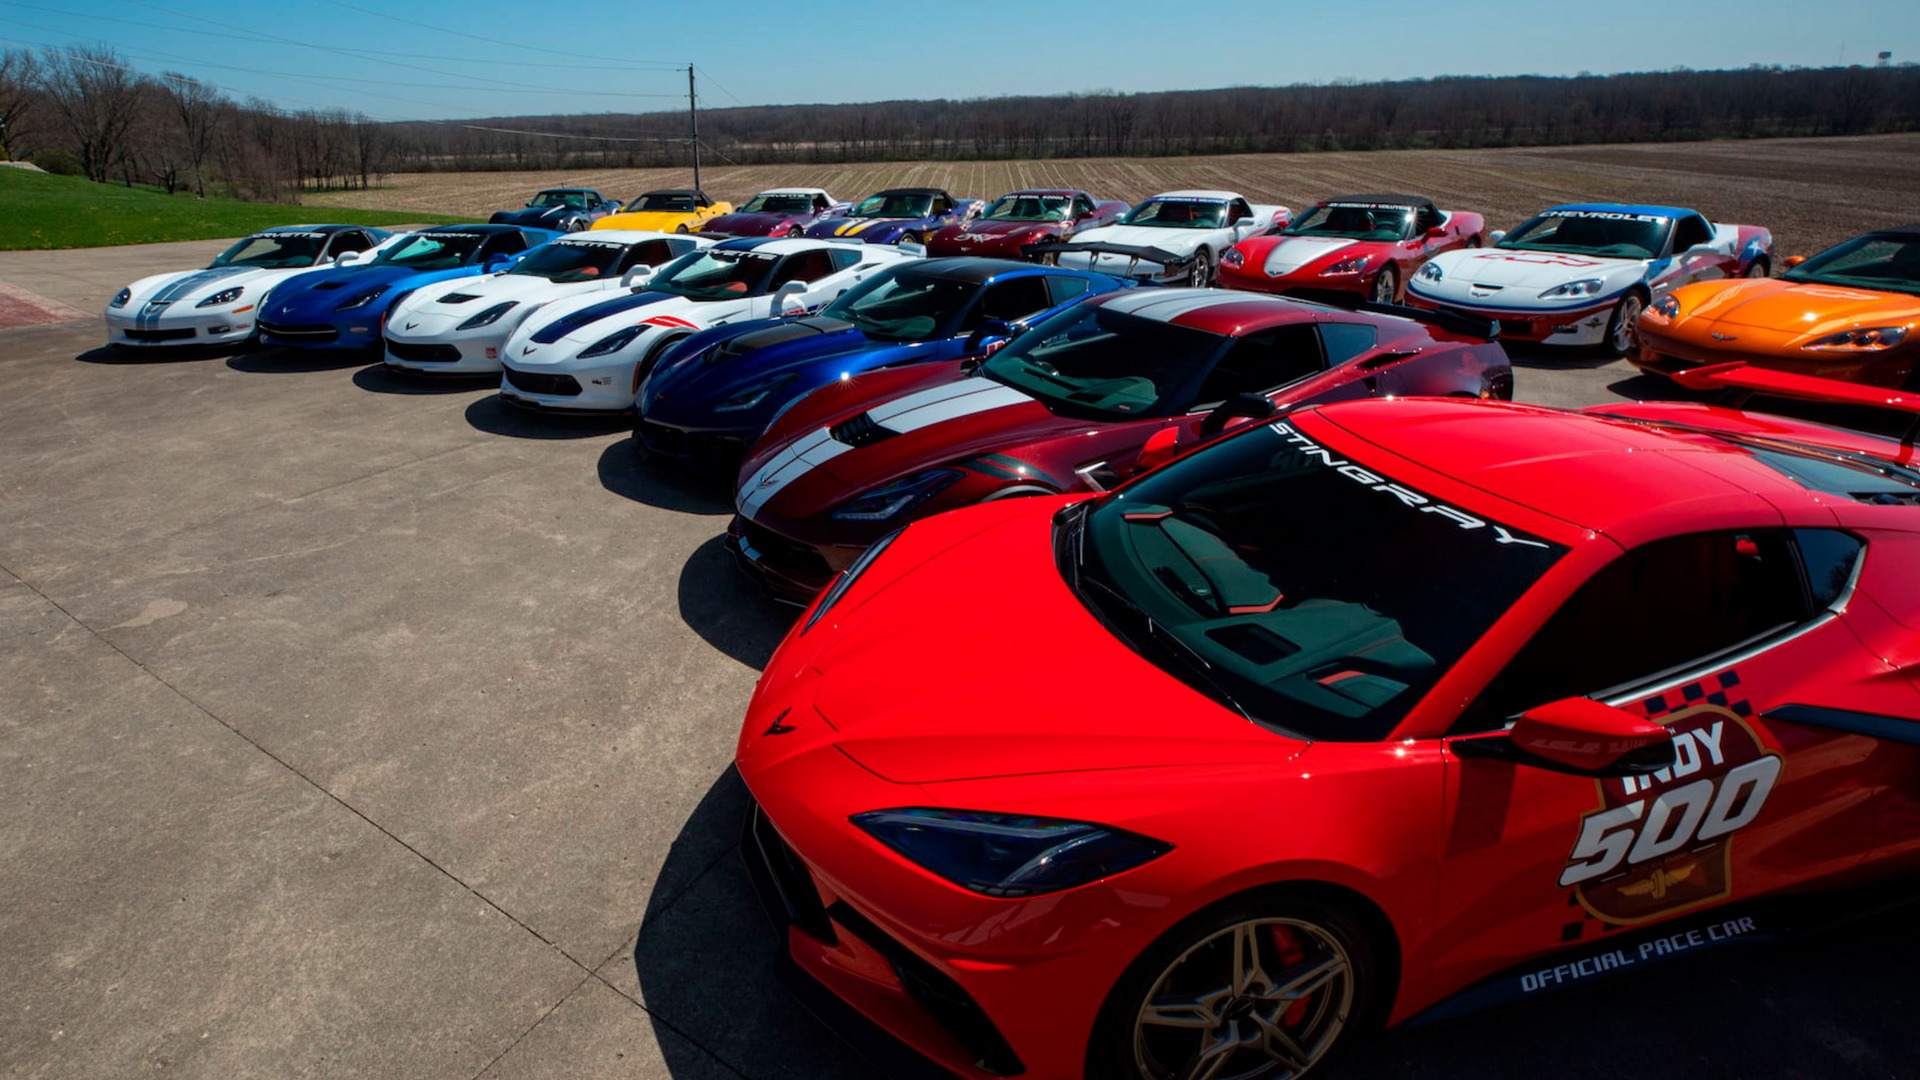 Lác mắt với bộ sưu tập siêu xe khổng lồ gồm 18 chiếc Corvette Pace 500 Indy rao bán tại Mecum - Ảnh 1.